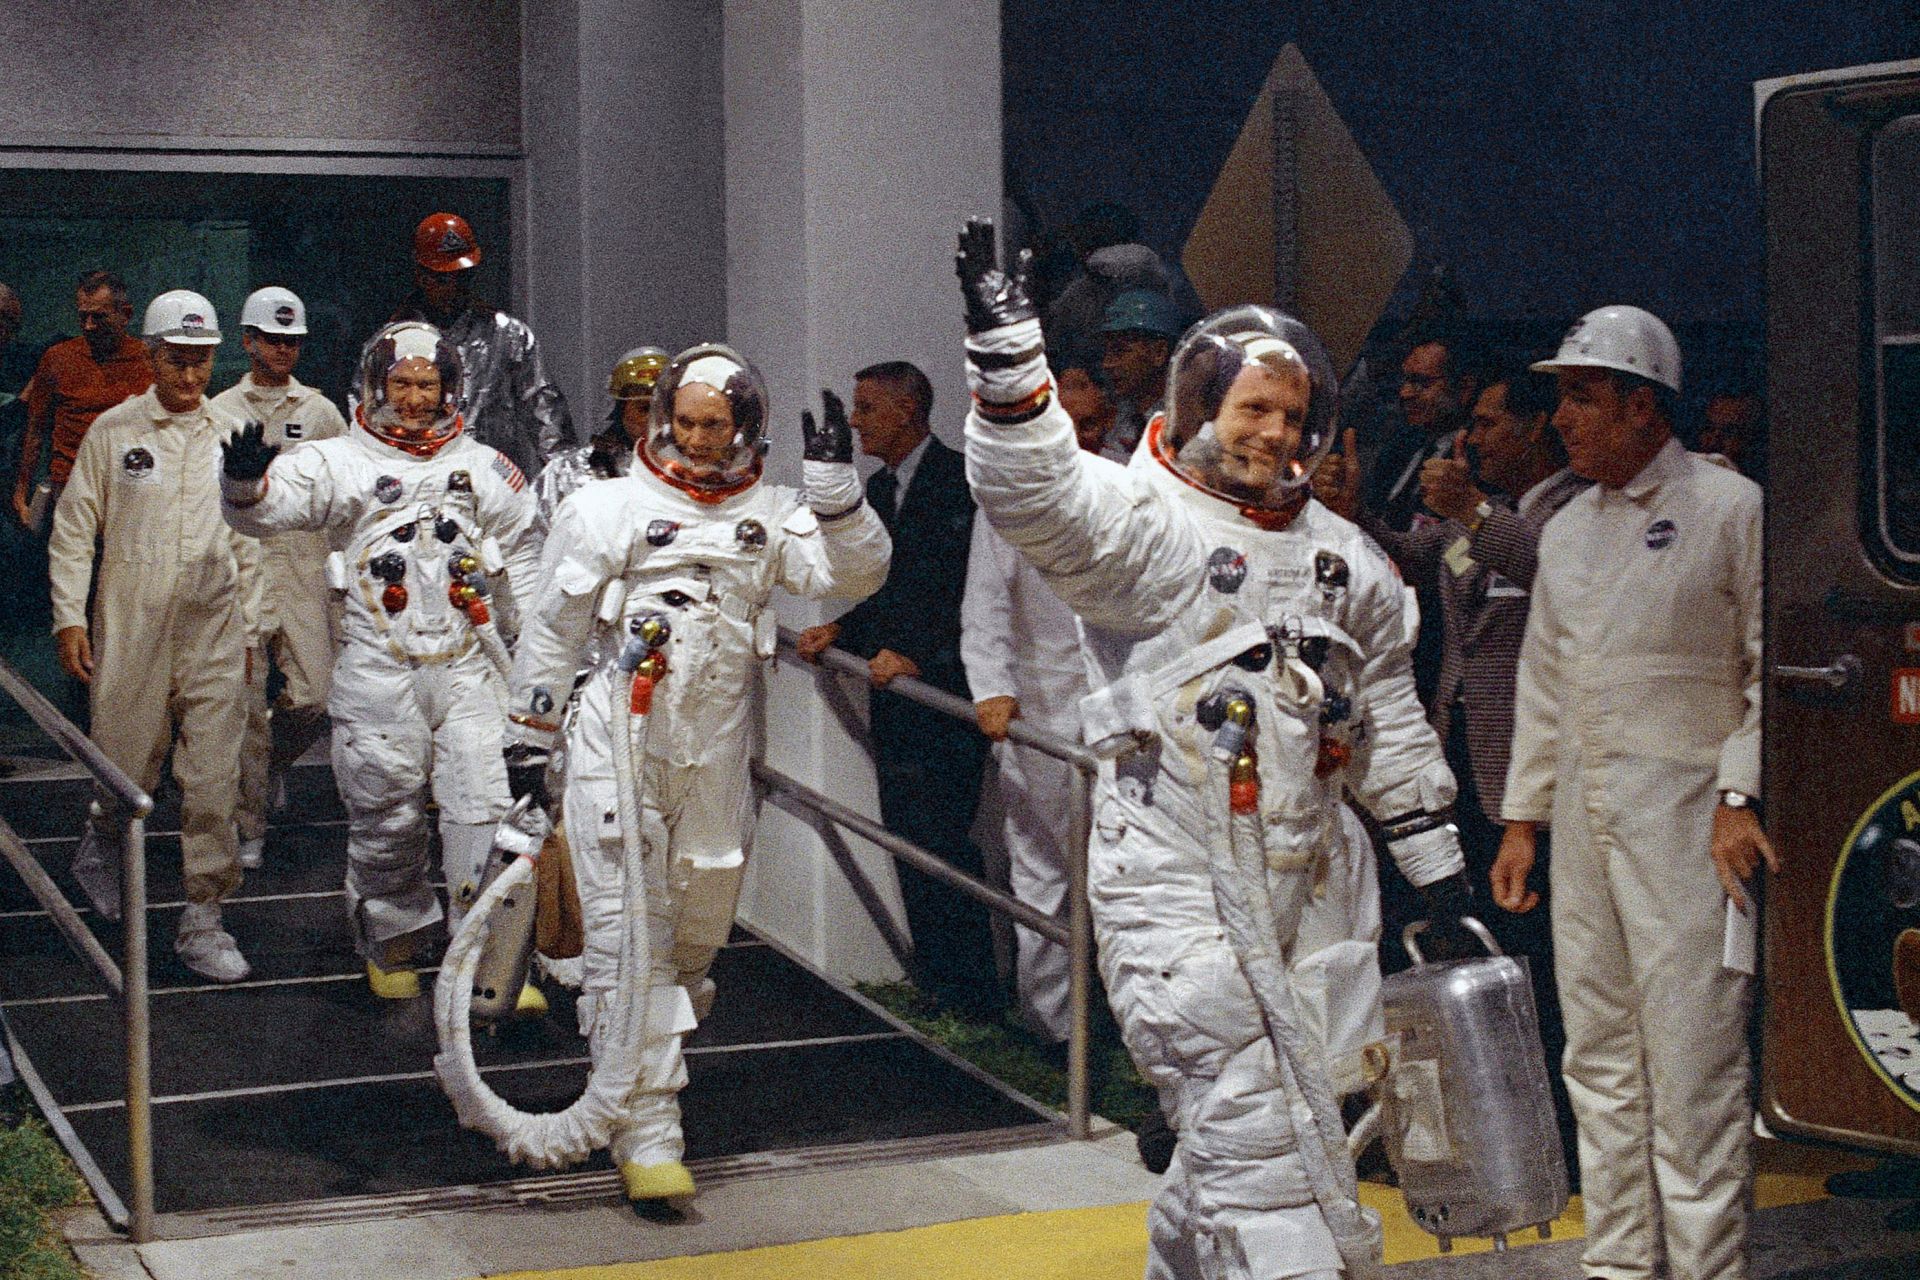 В тази снимка от 16 юли 1969 г., отдясно, Нийл Армстронг, Майкъл Колинс и Бъз Олдрин отиват до микробуса, който ще отведе екипажа на стартовата площадка в космическия център Кенеди на остров Мерит, Флорида